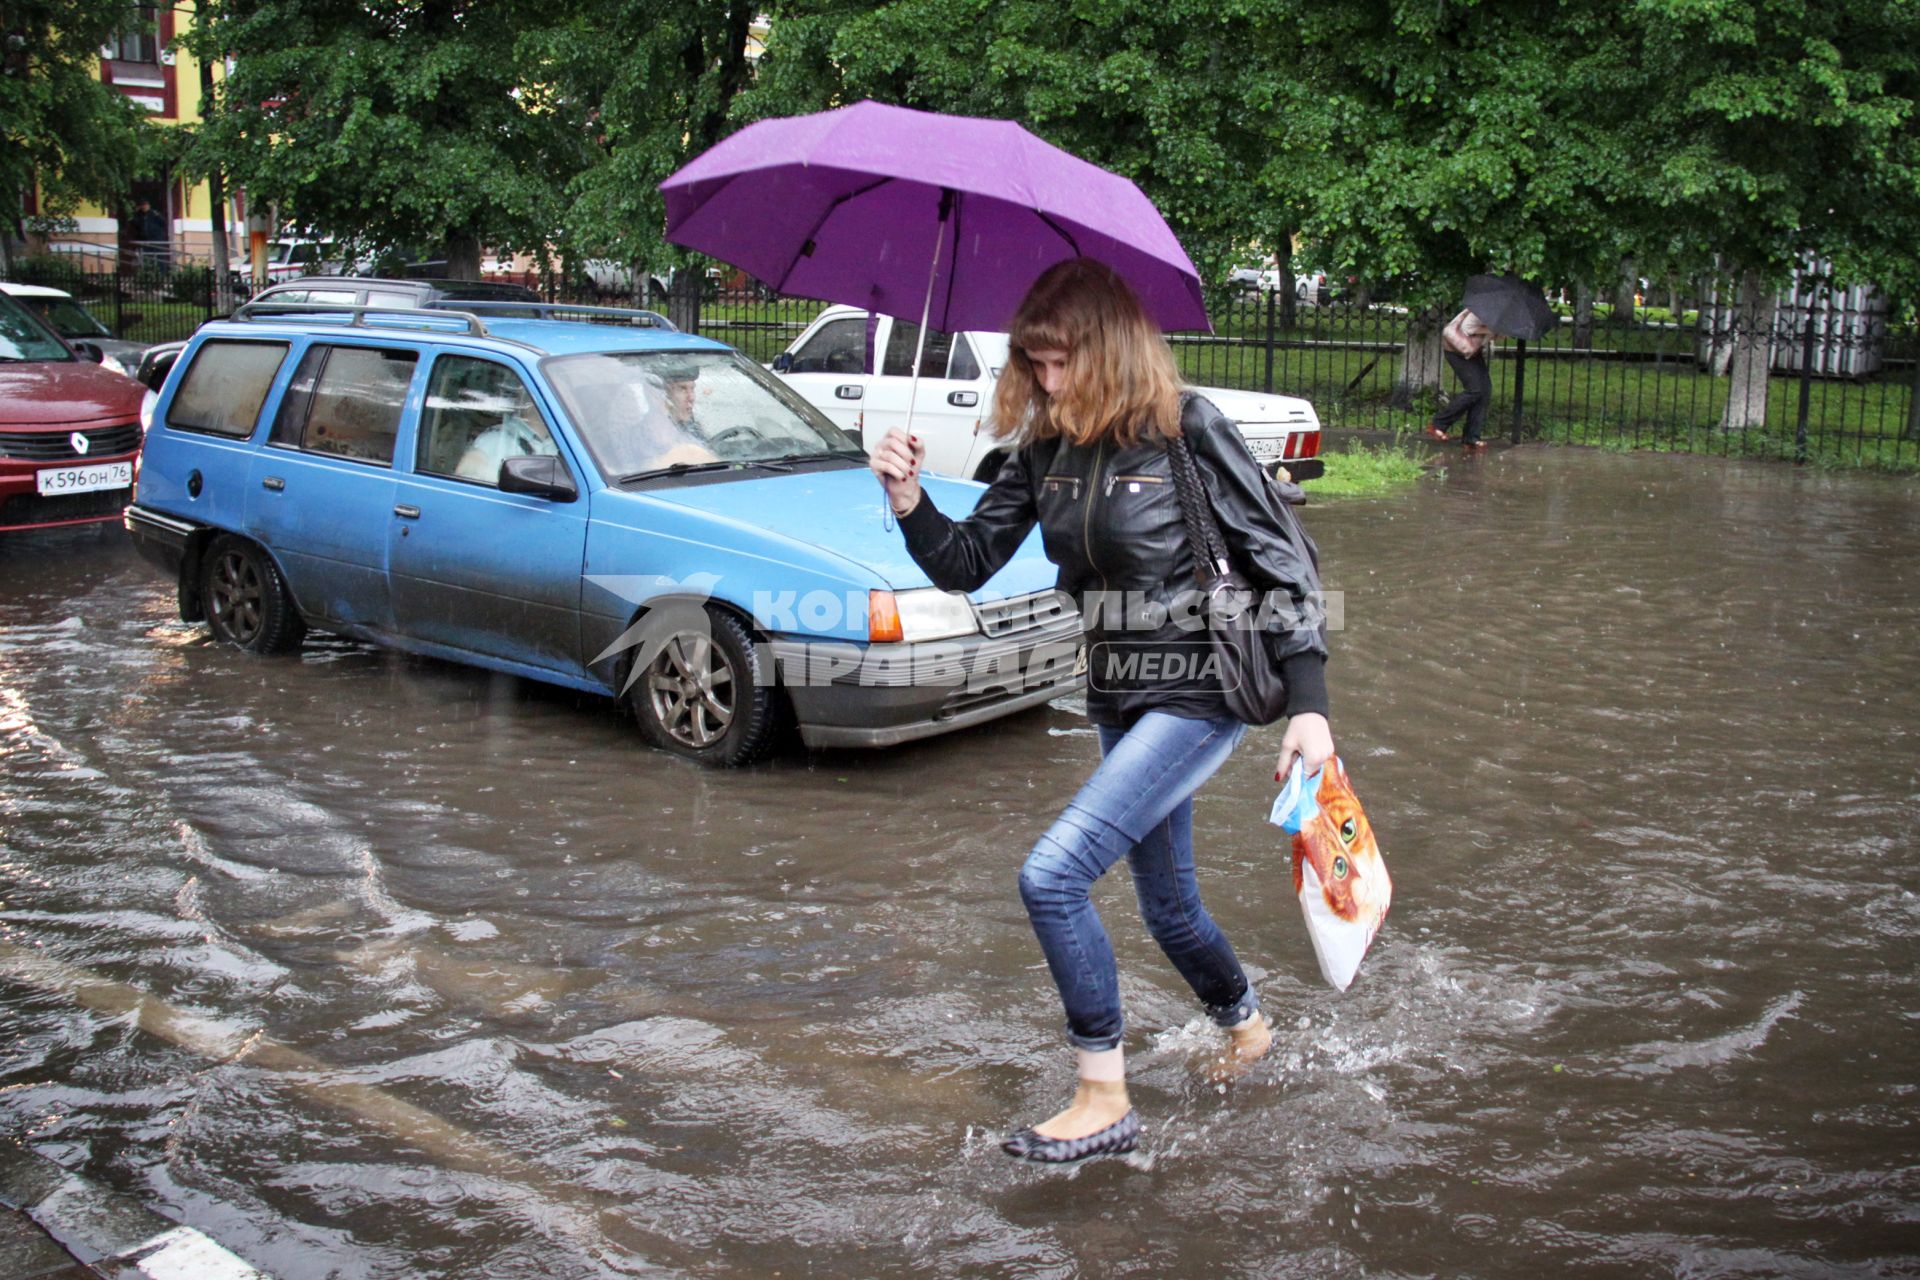 Последствия ливня в городе - затопленные улицы. Девушка под зонтом переходит затопленную улицу.